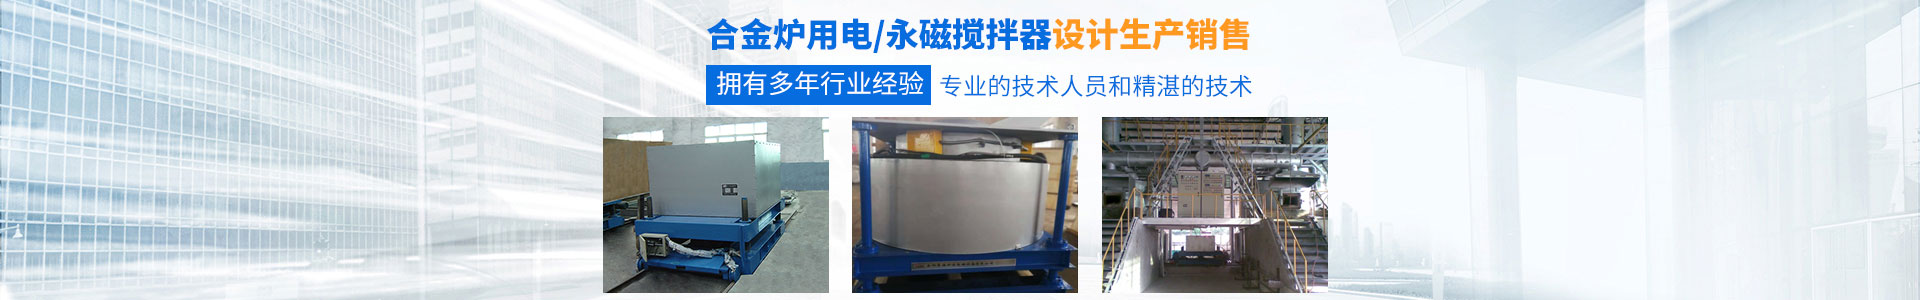 岳阳3200威尼斯vip炉窑电磁设备有限公司_湖南熔炼炉生产销售|湖南电磁搅拌器生产销售